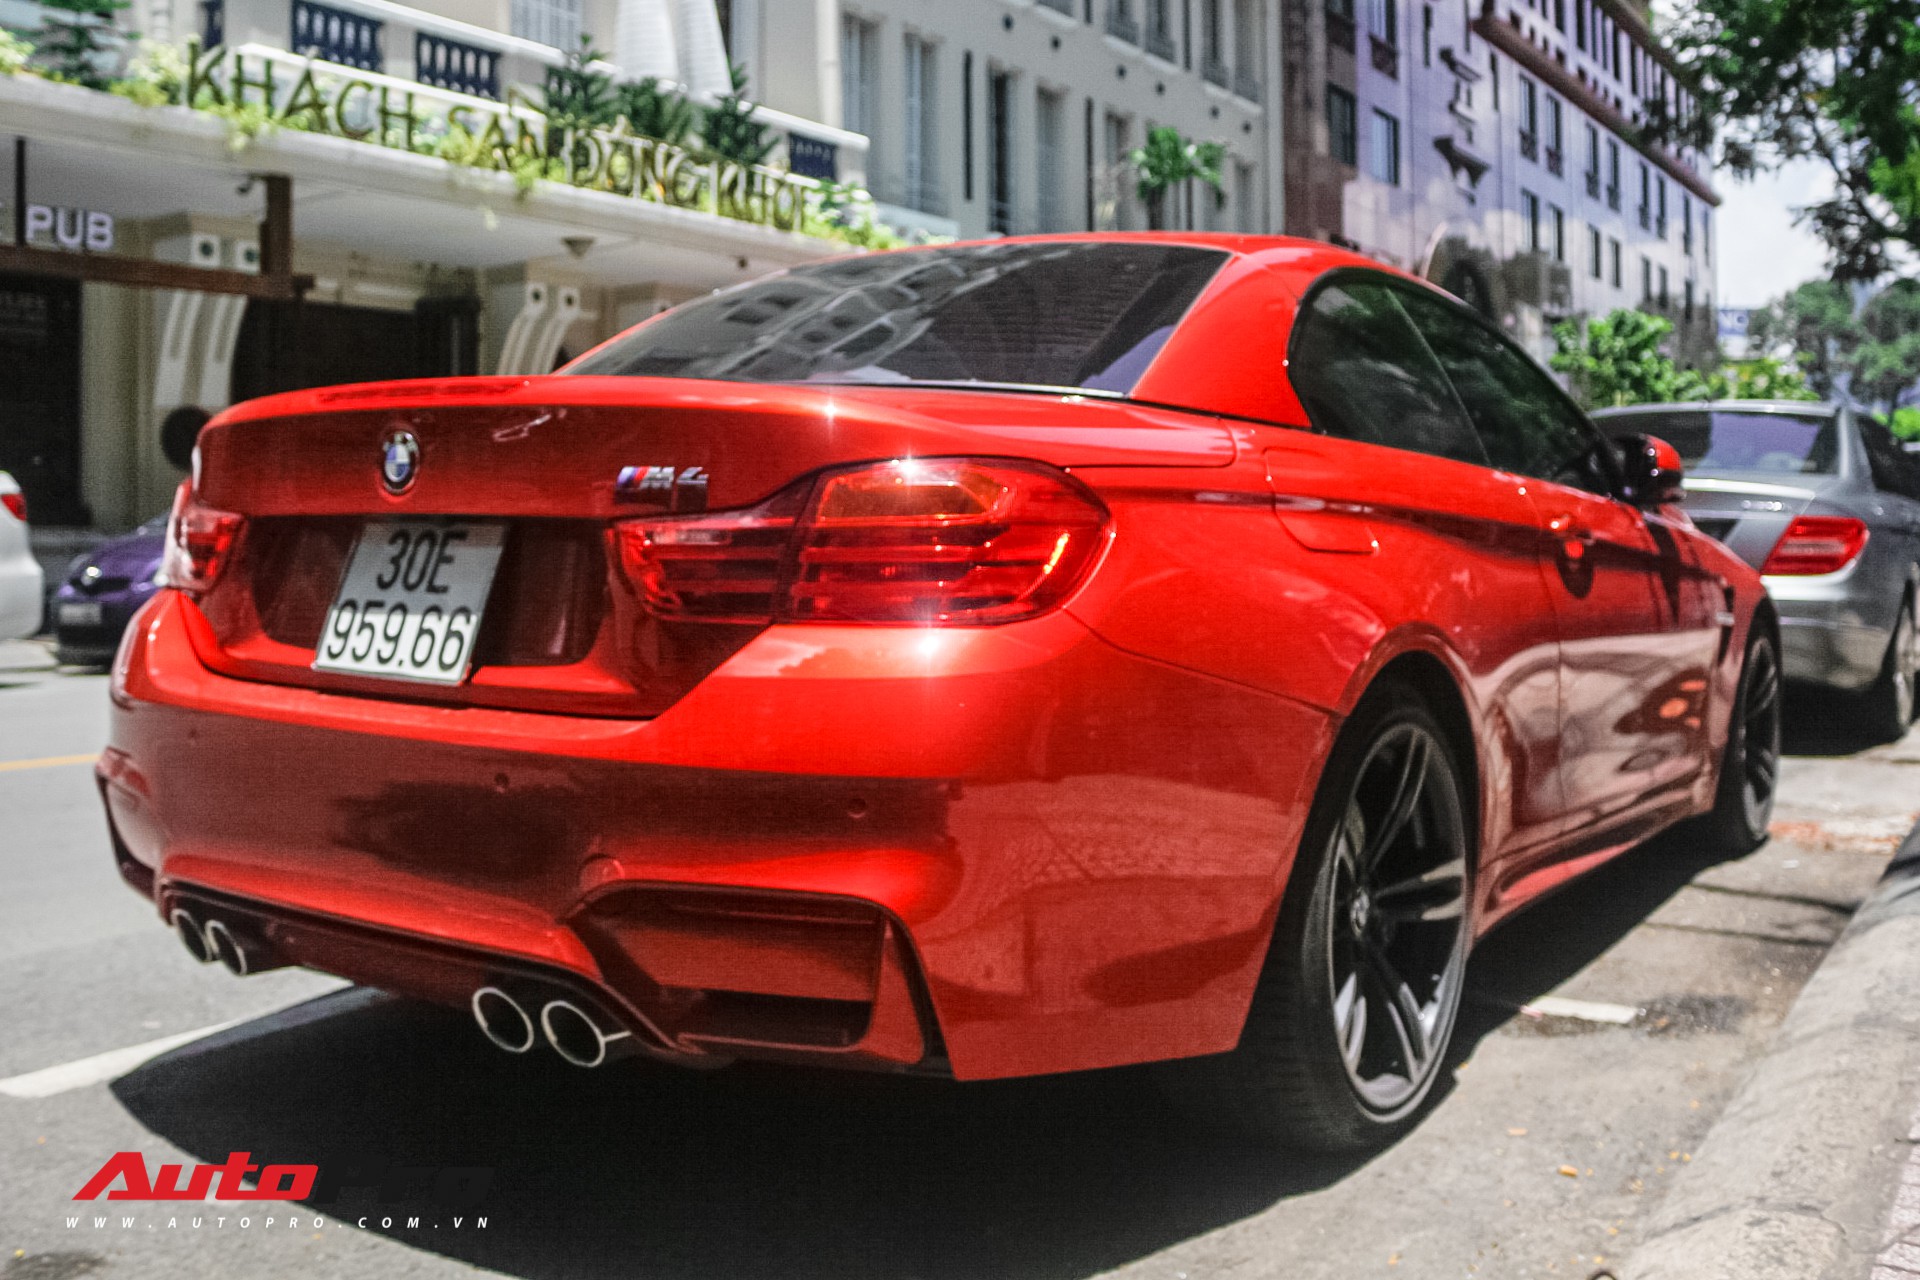 Hàng hiếm BMW M4 mui trần giá 4,2 tỷ đồng tại Sài Gòn